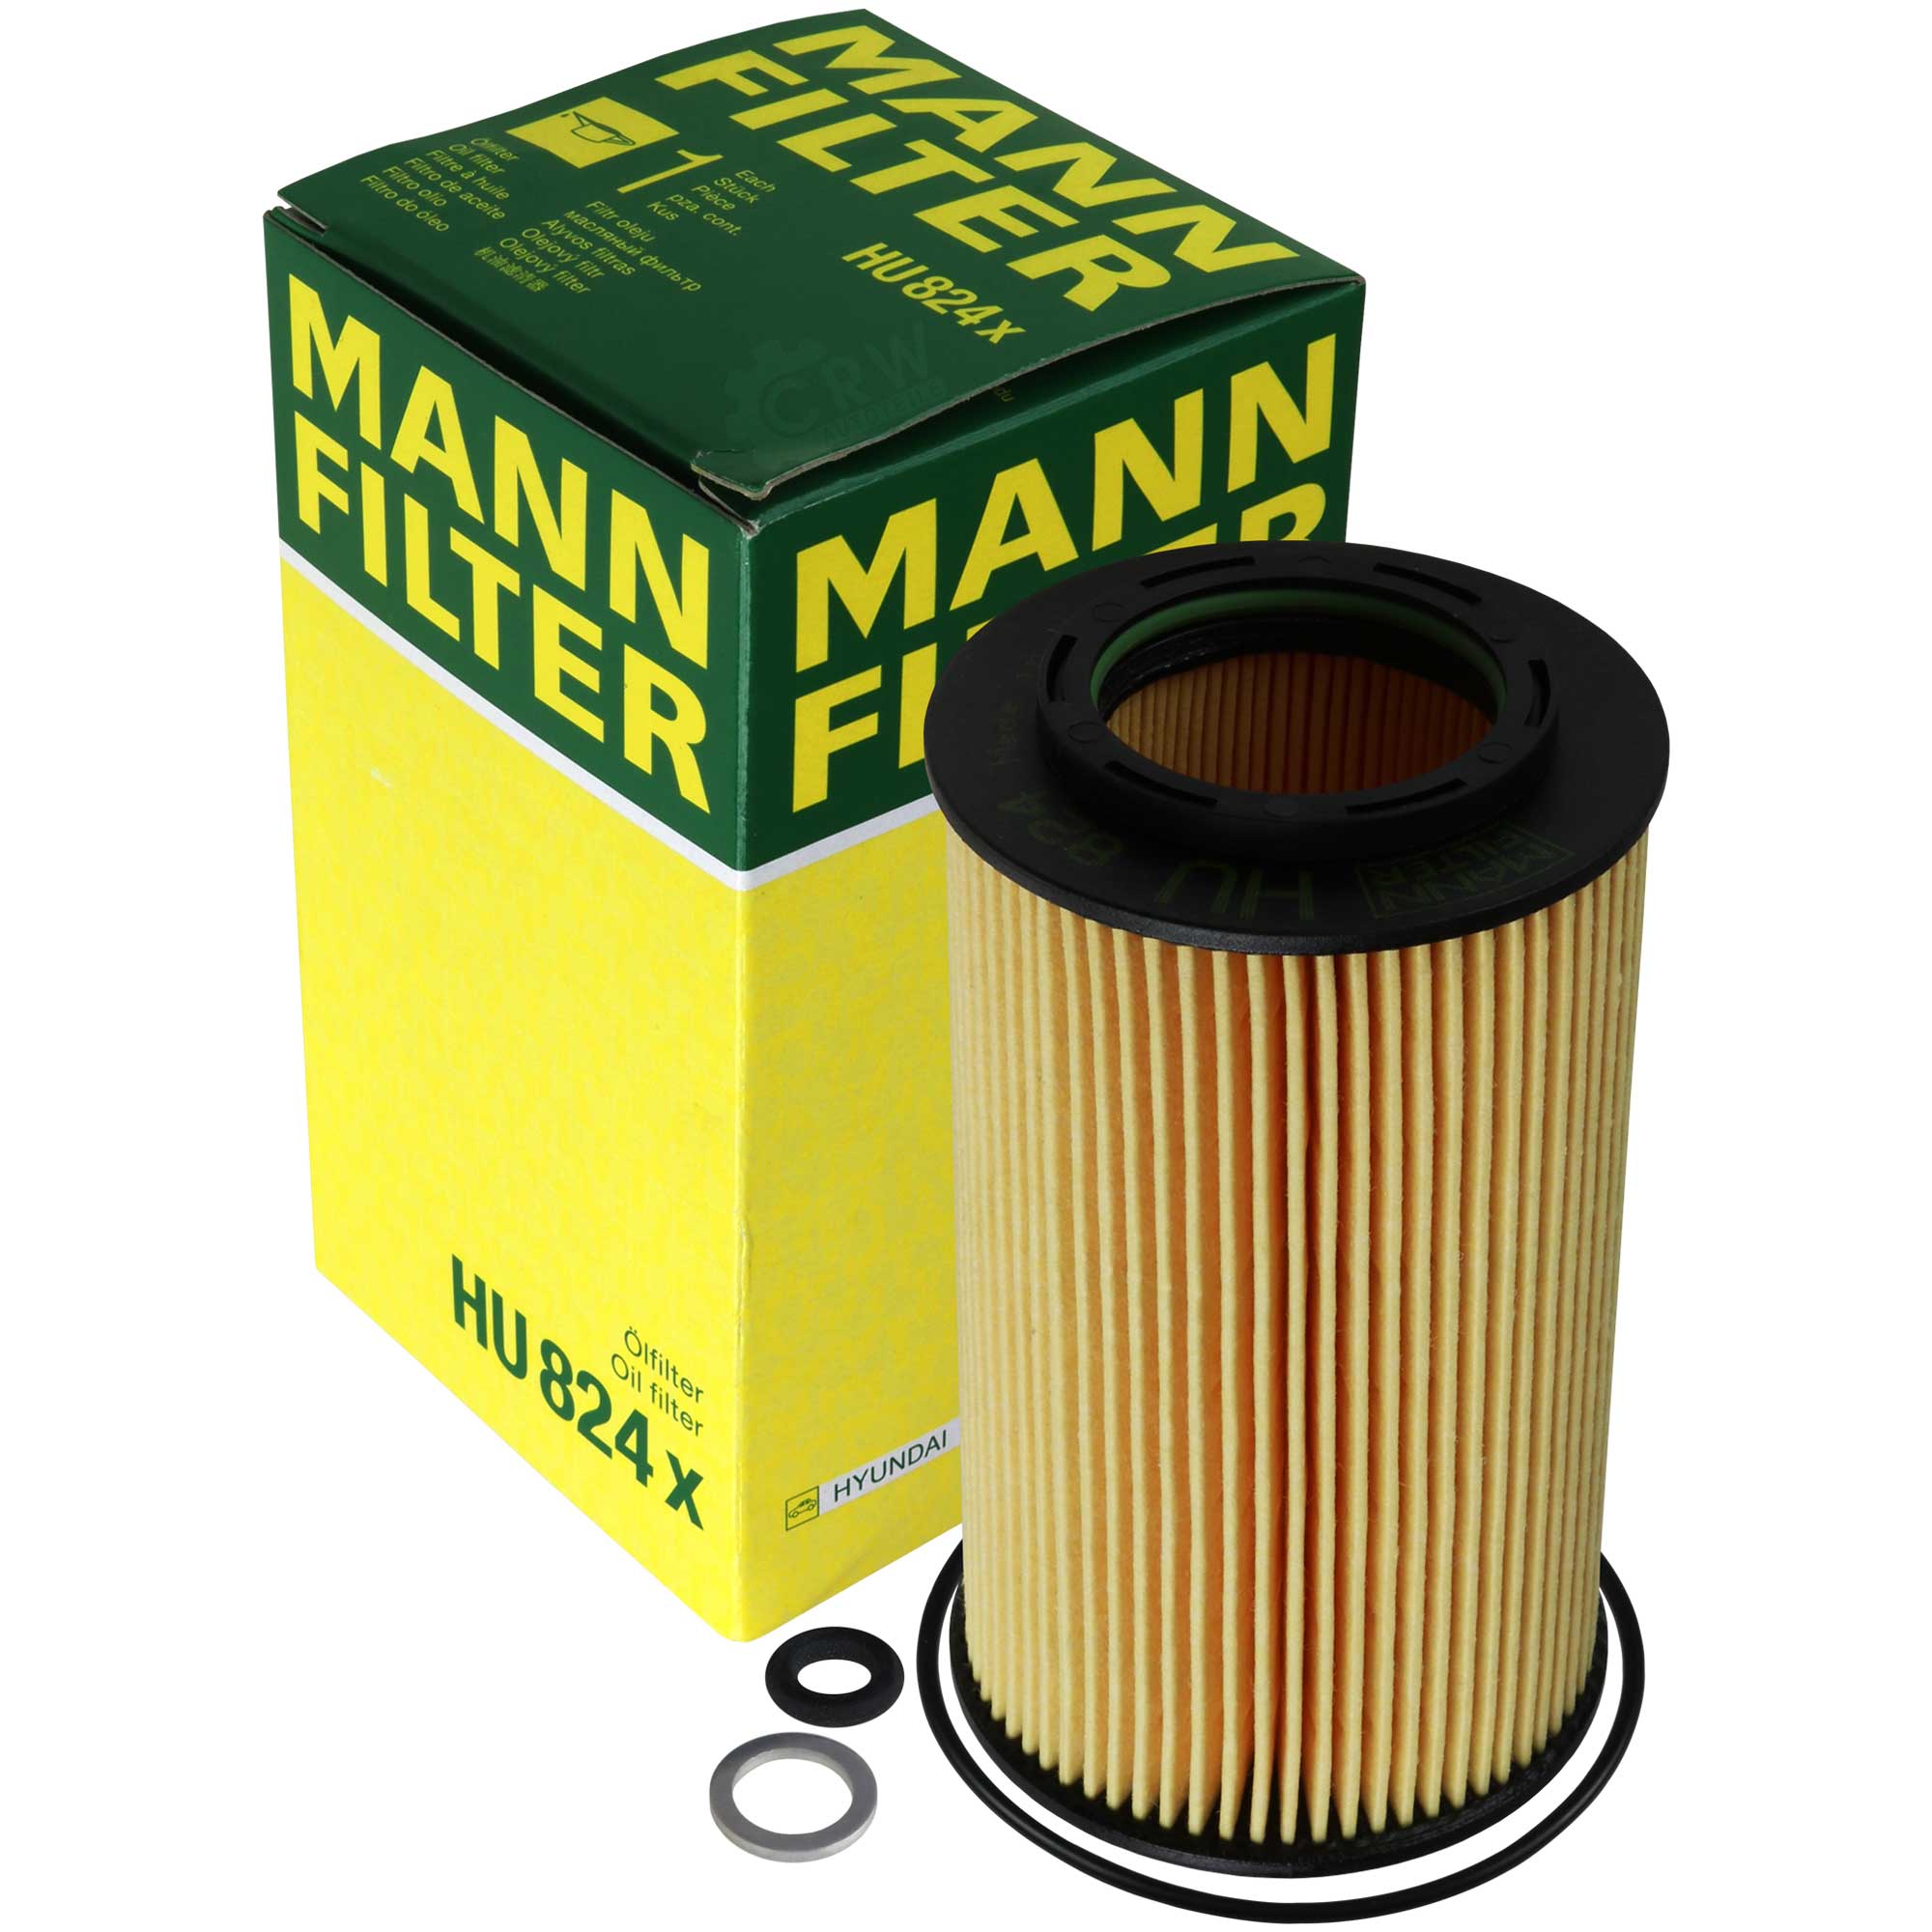 MANN-FILTER Ölfilter HU 824 x Oil Filter